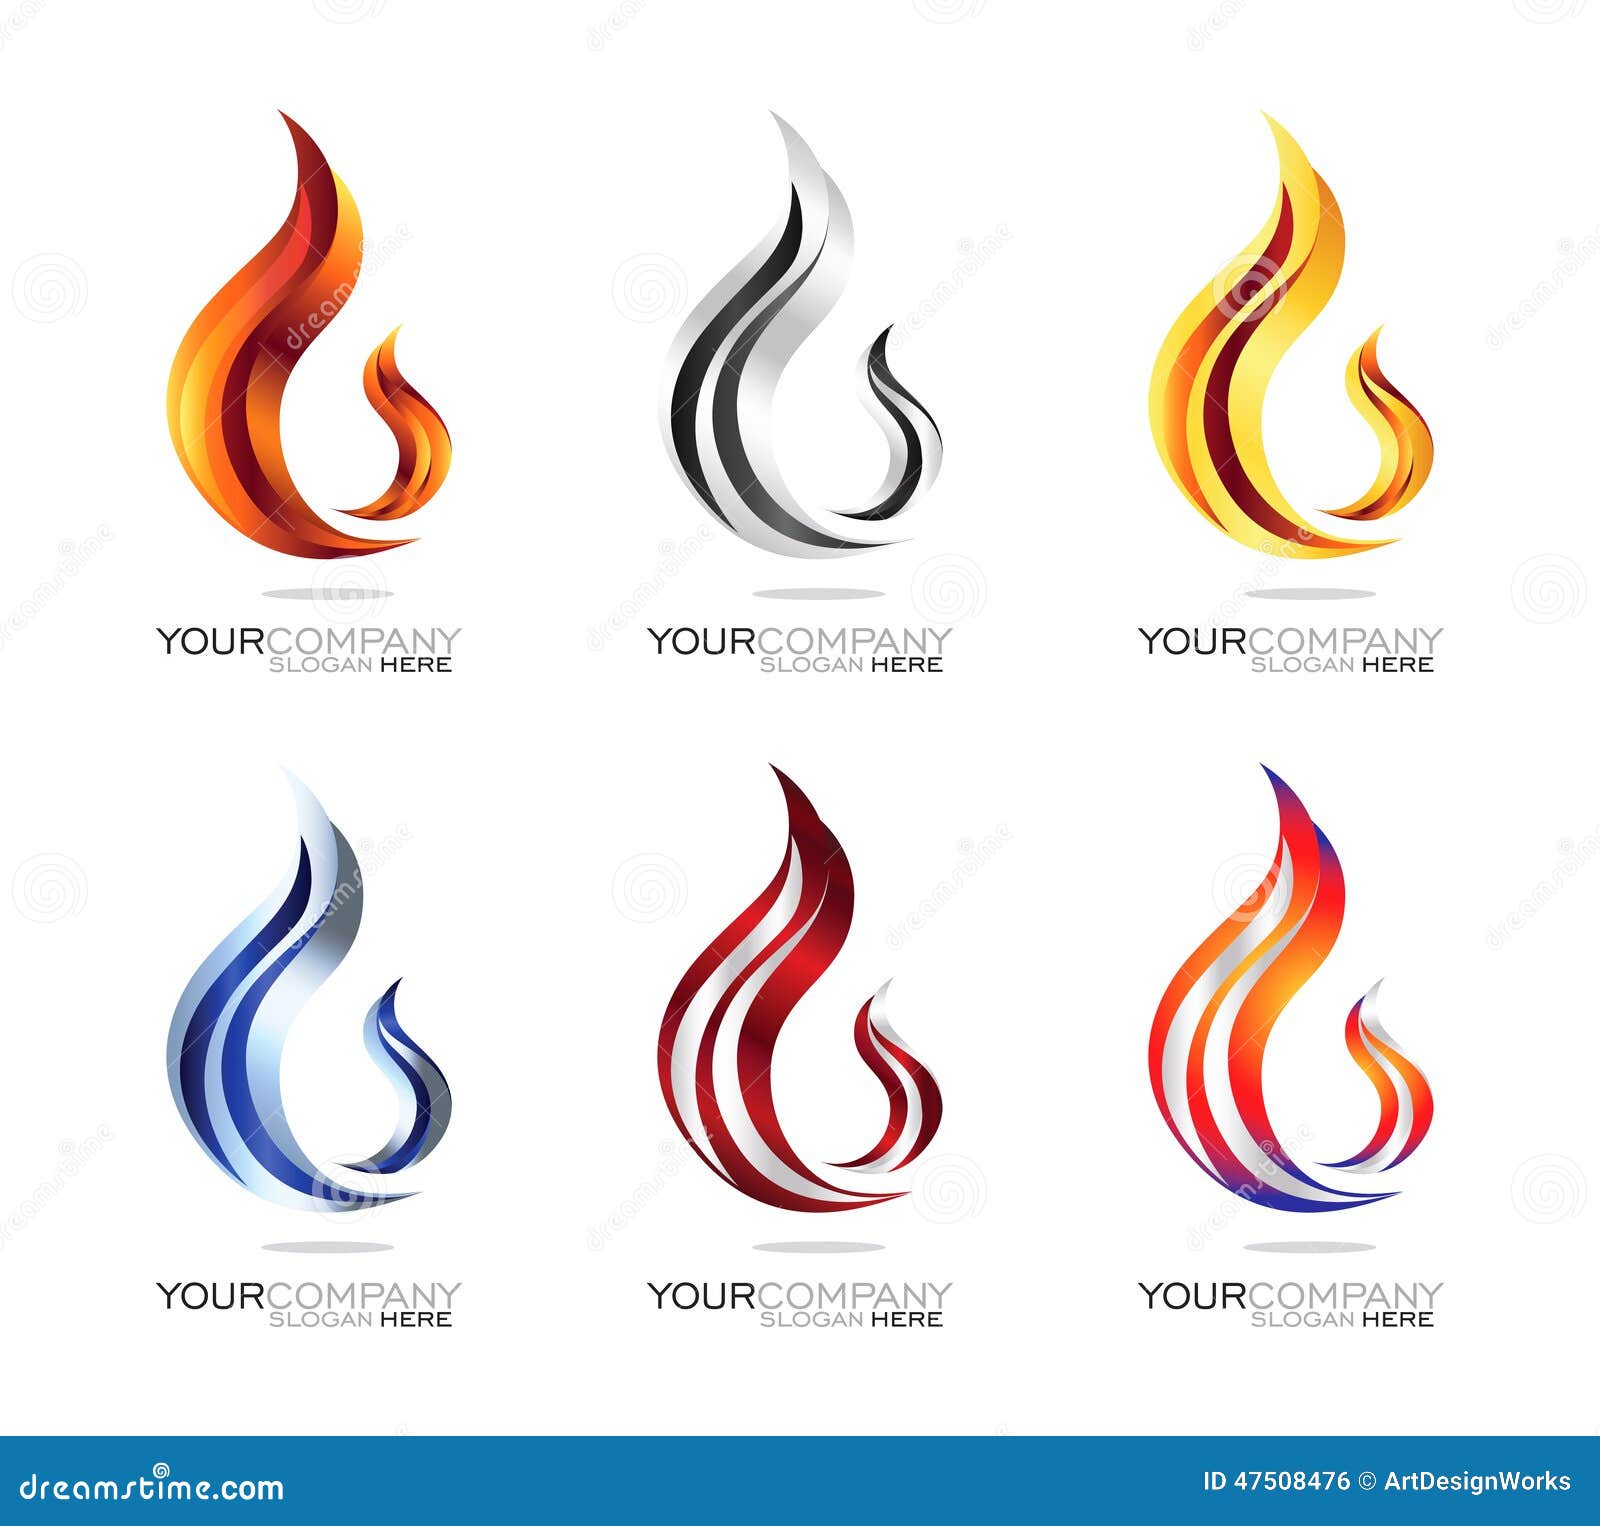 a unique fire flame logo 